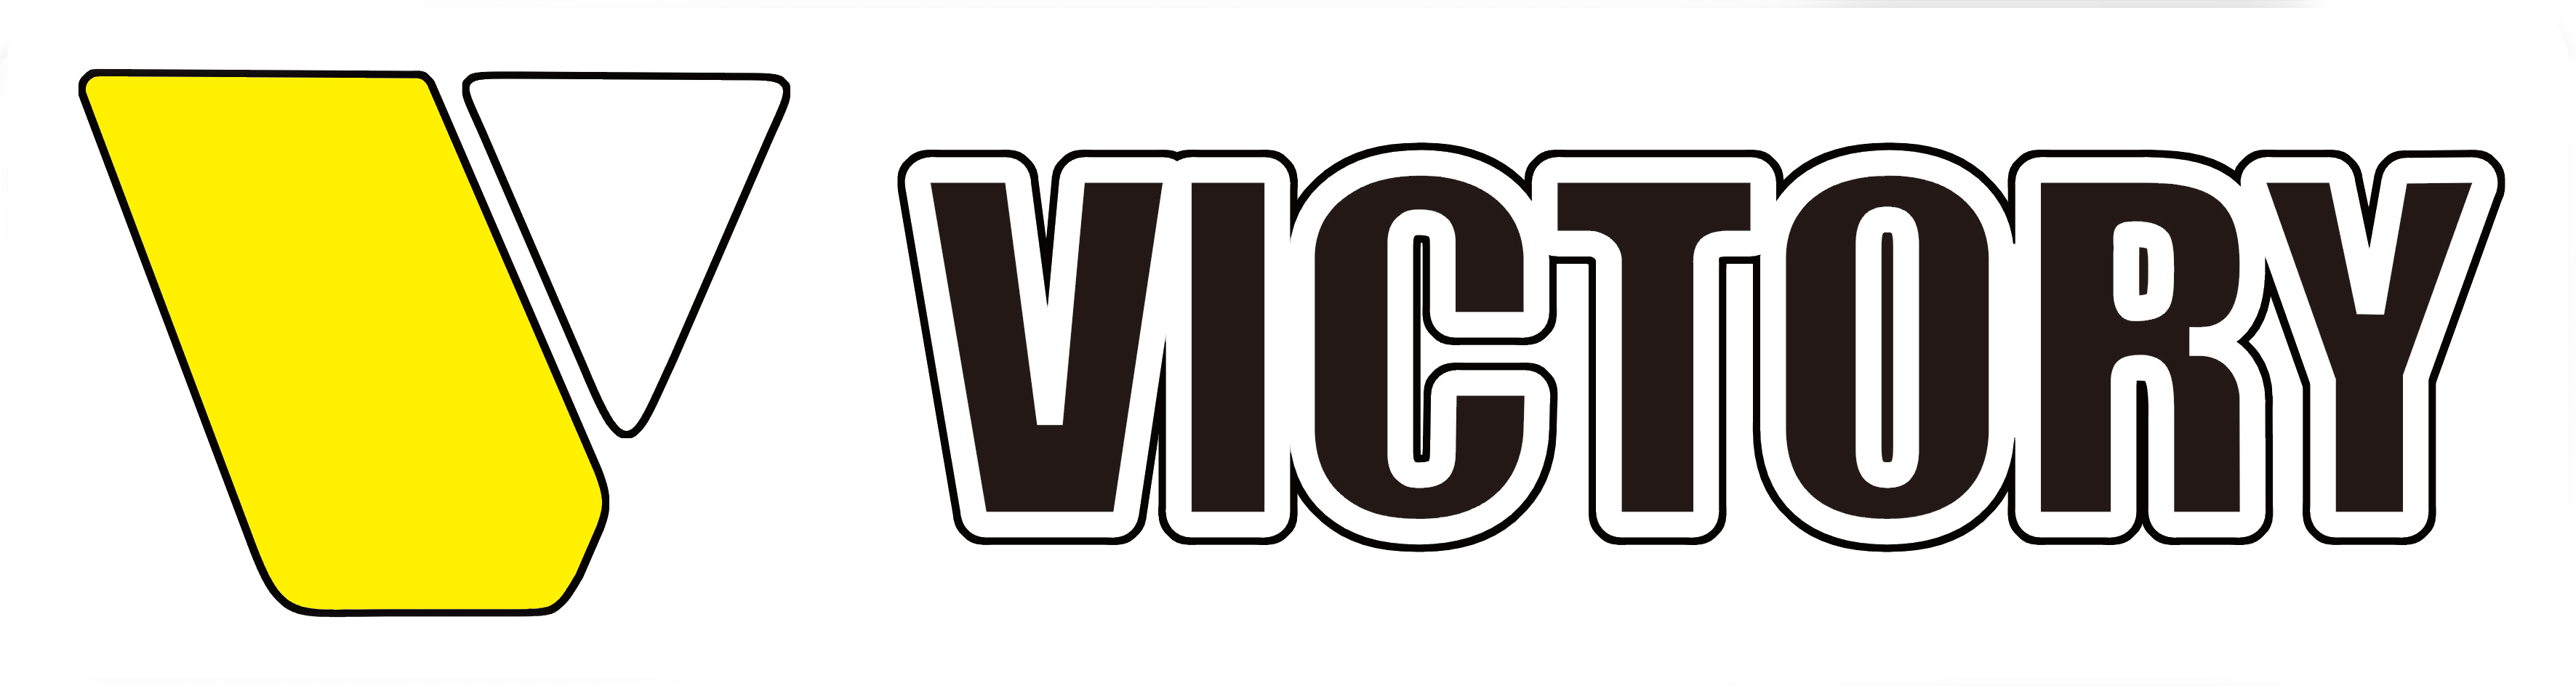 Victory holzspalter - Die TOP Produkte unter allen Victory holzspalter